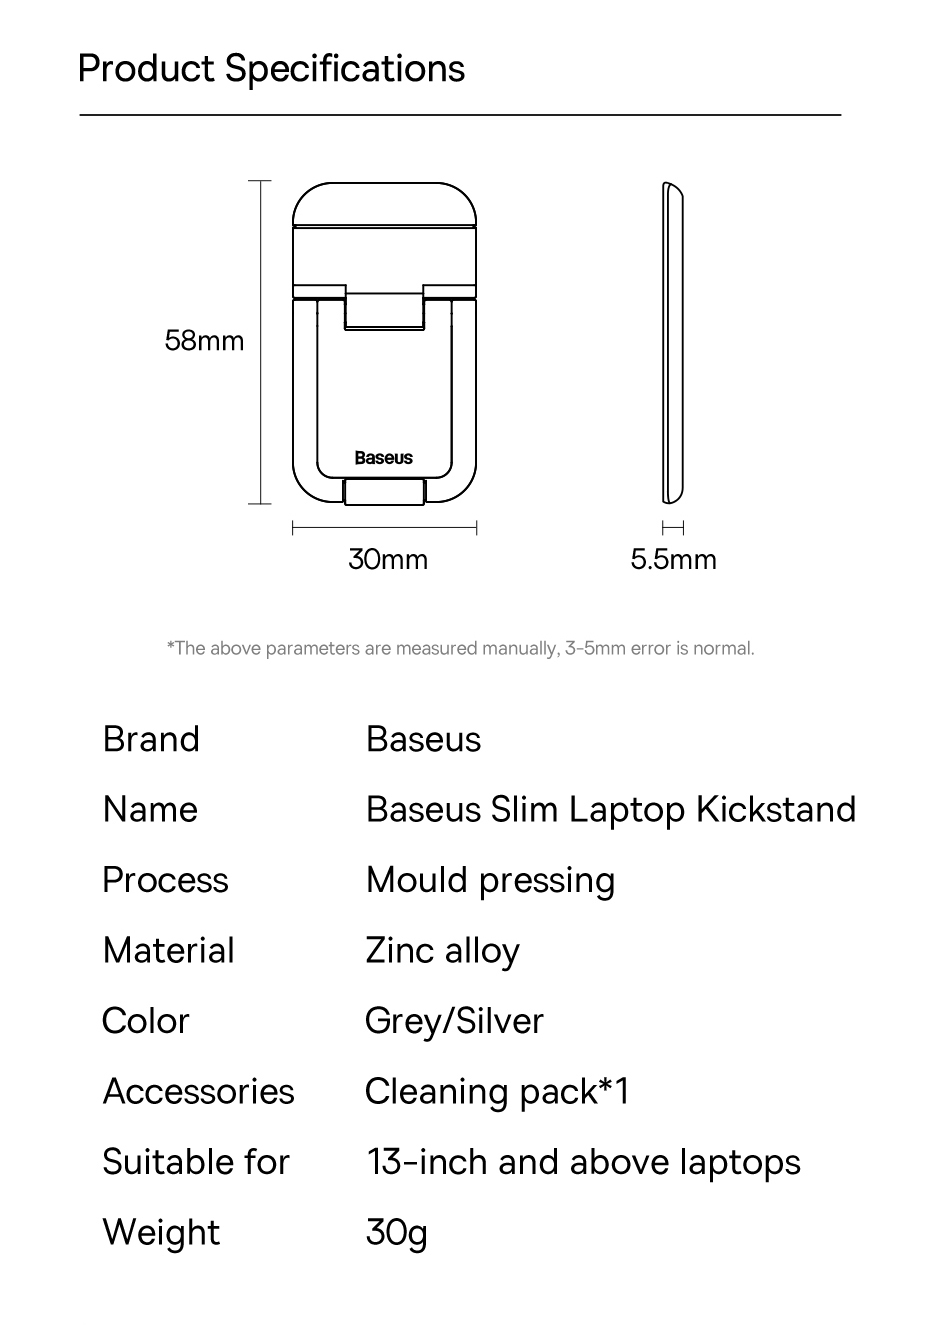 Giá đỡ, Chân đế đa năng nhỏ gọn cho Laptop/Mac-book Ba-se-us Slim Laptop Kickstand (Kim loại cao cấp, Xếp Gọn, Bộ 2 pcs) - Hàng chính hãng